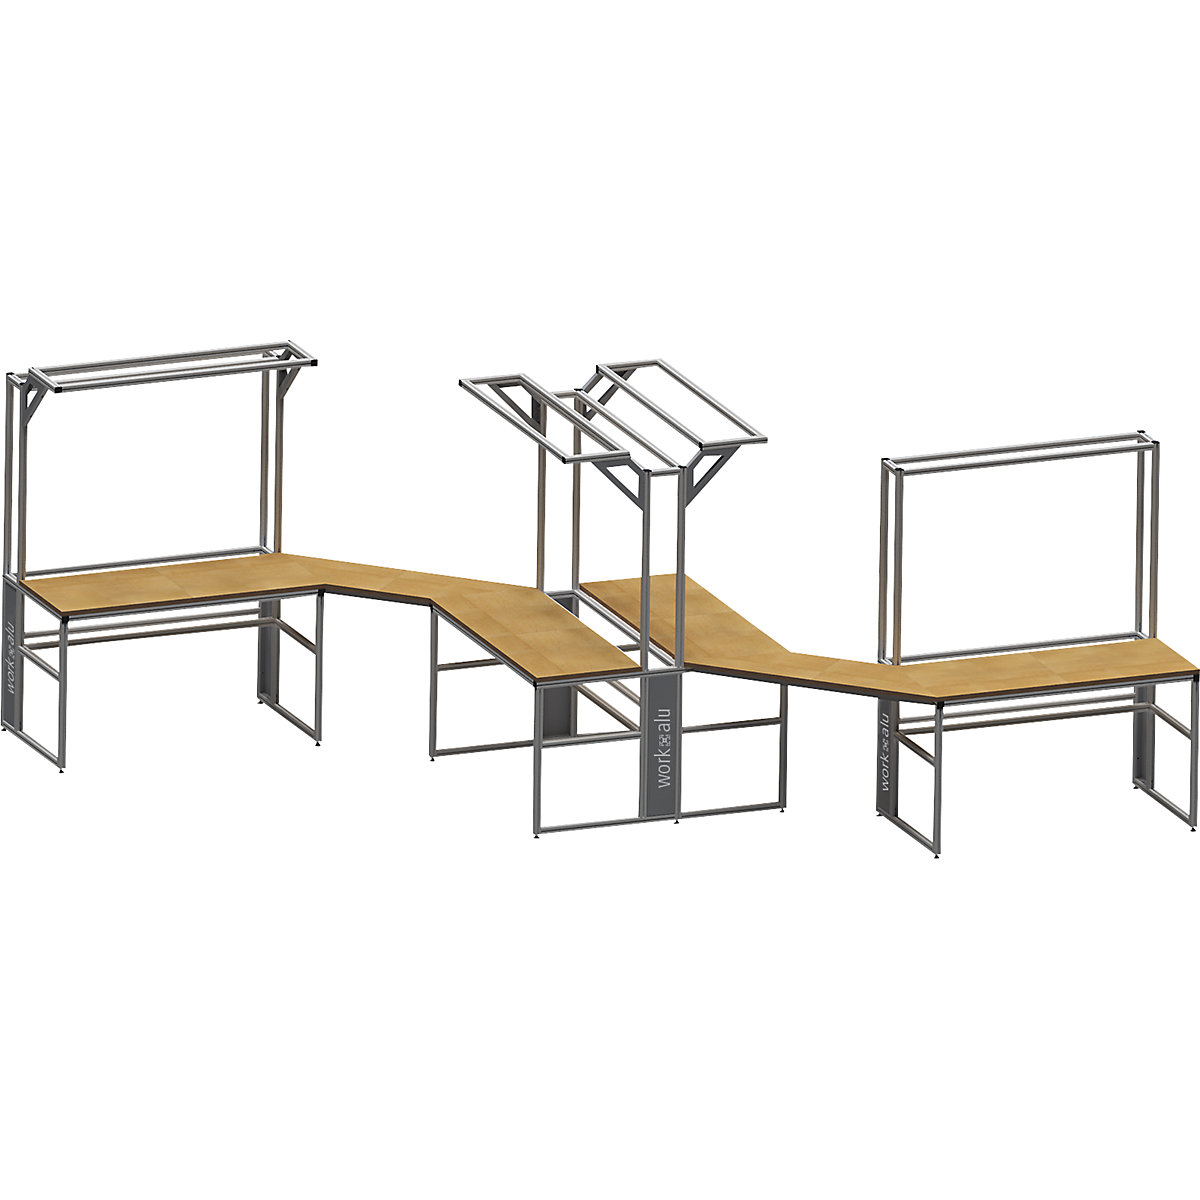 Stół warsztatowy aluminiowy workalu® z modułem systemowym, dwustronny – bedrunka hirth (Zdjęcie produktu 4)-3